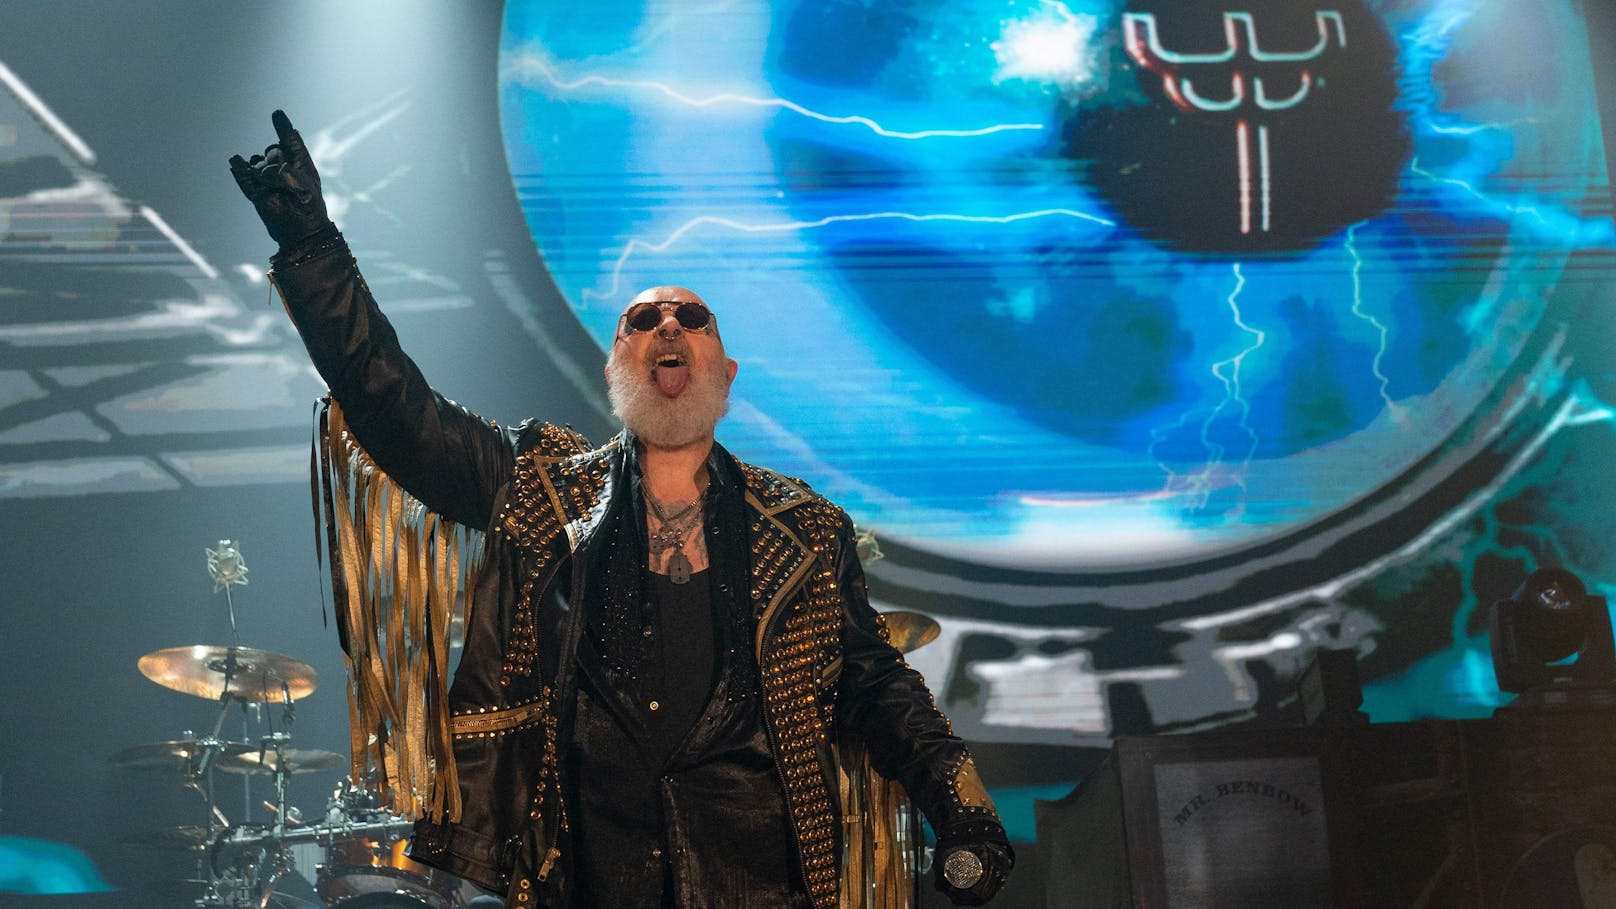 Neues Album, Wien-Konzert – Judas Priest sind zurück